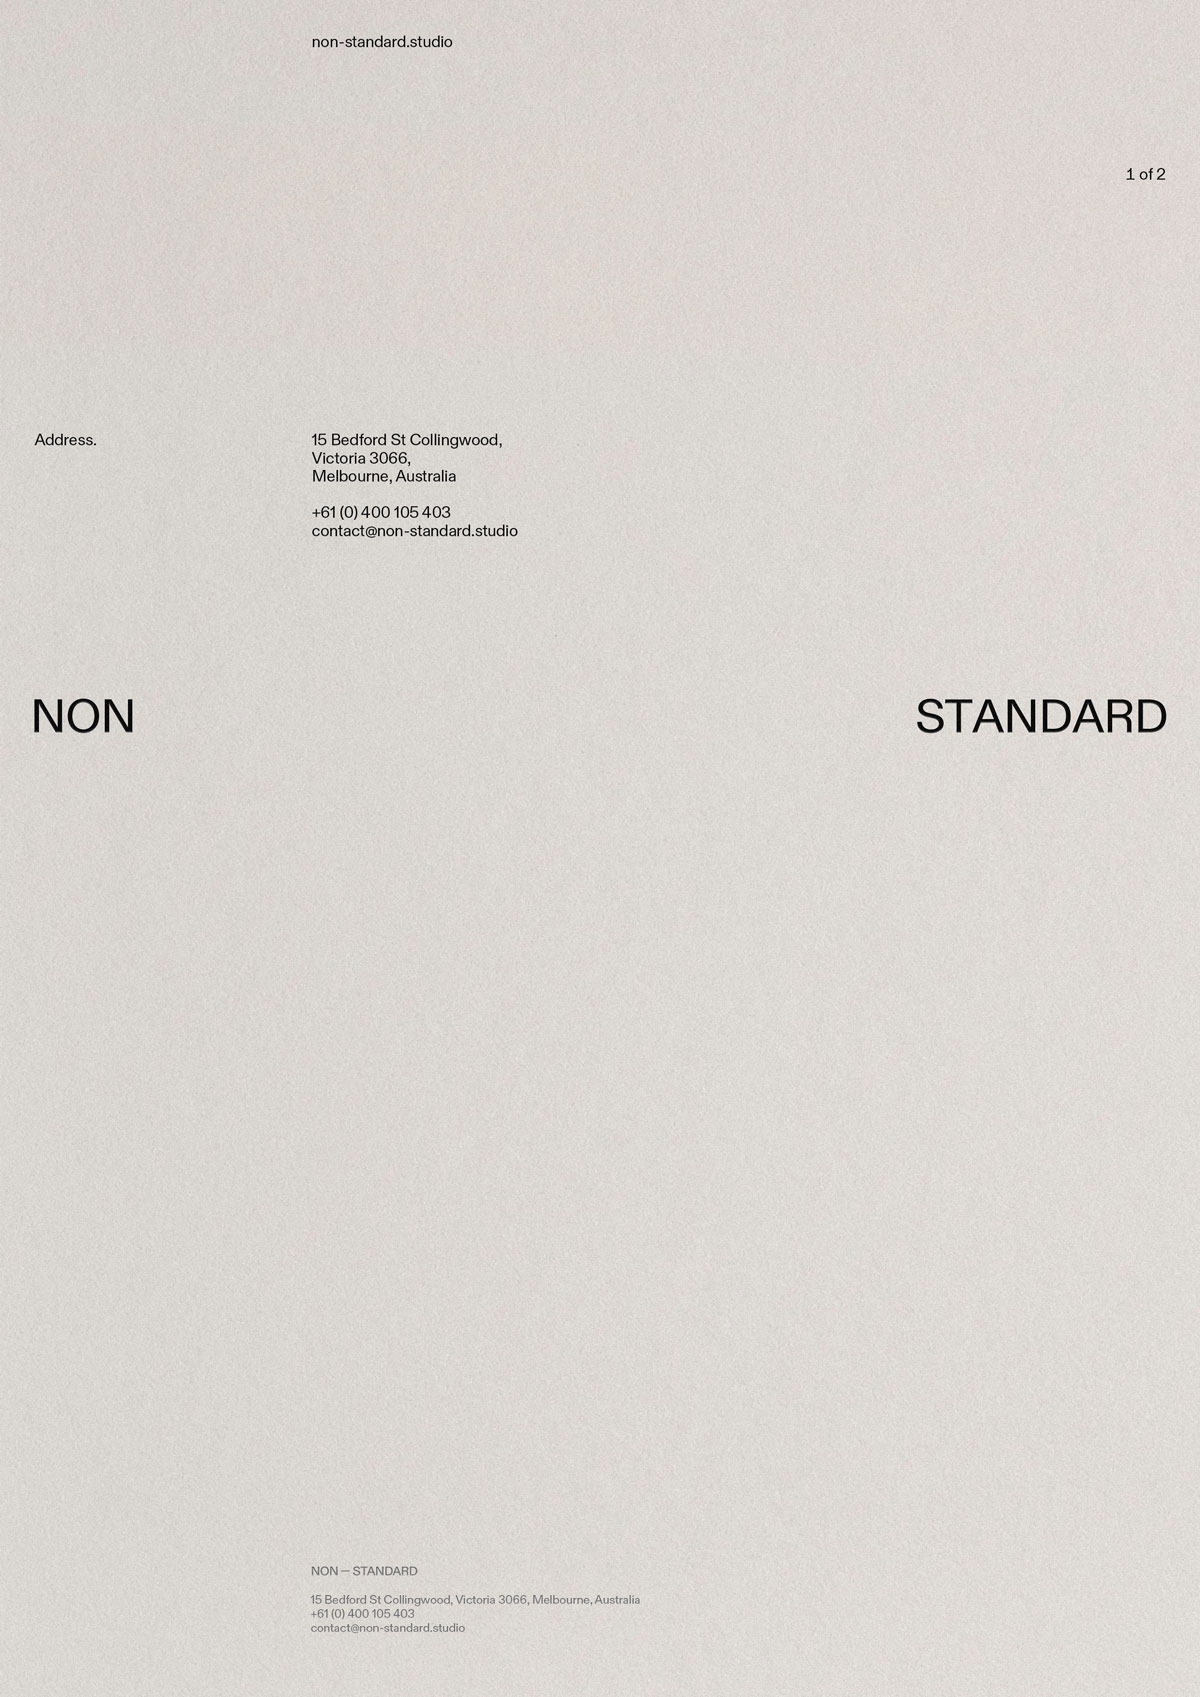 Non–Standard Brand Identity. Letter Head. Luke Hoban